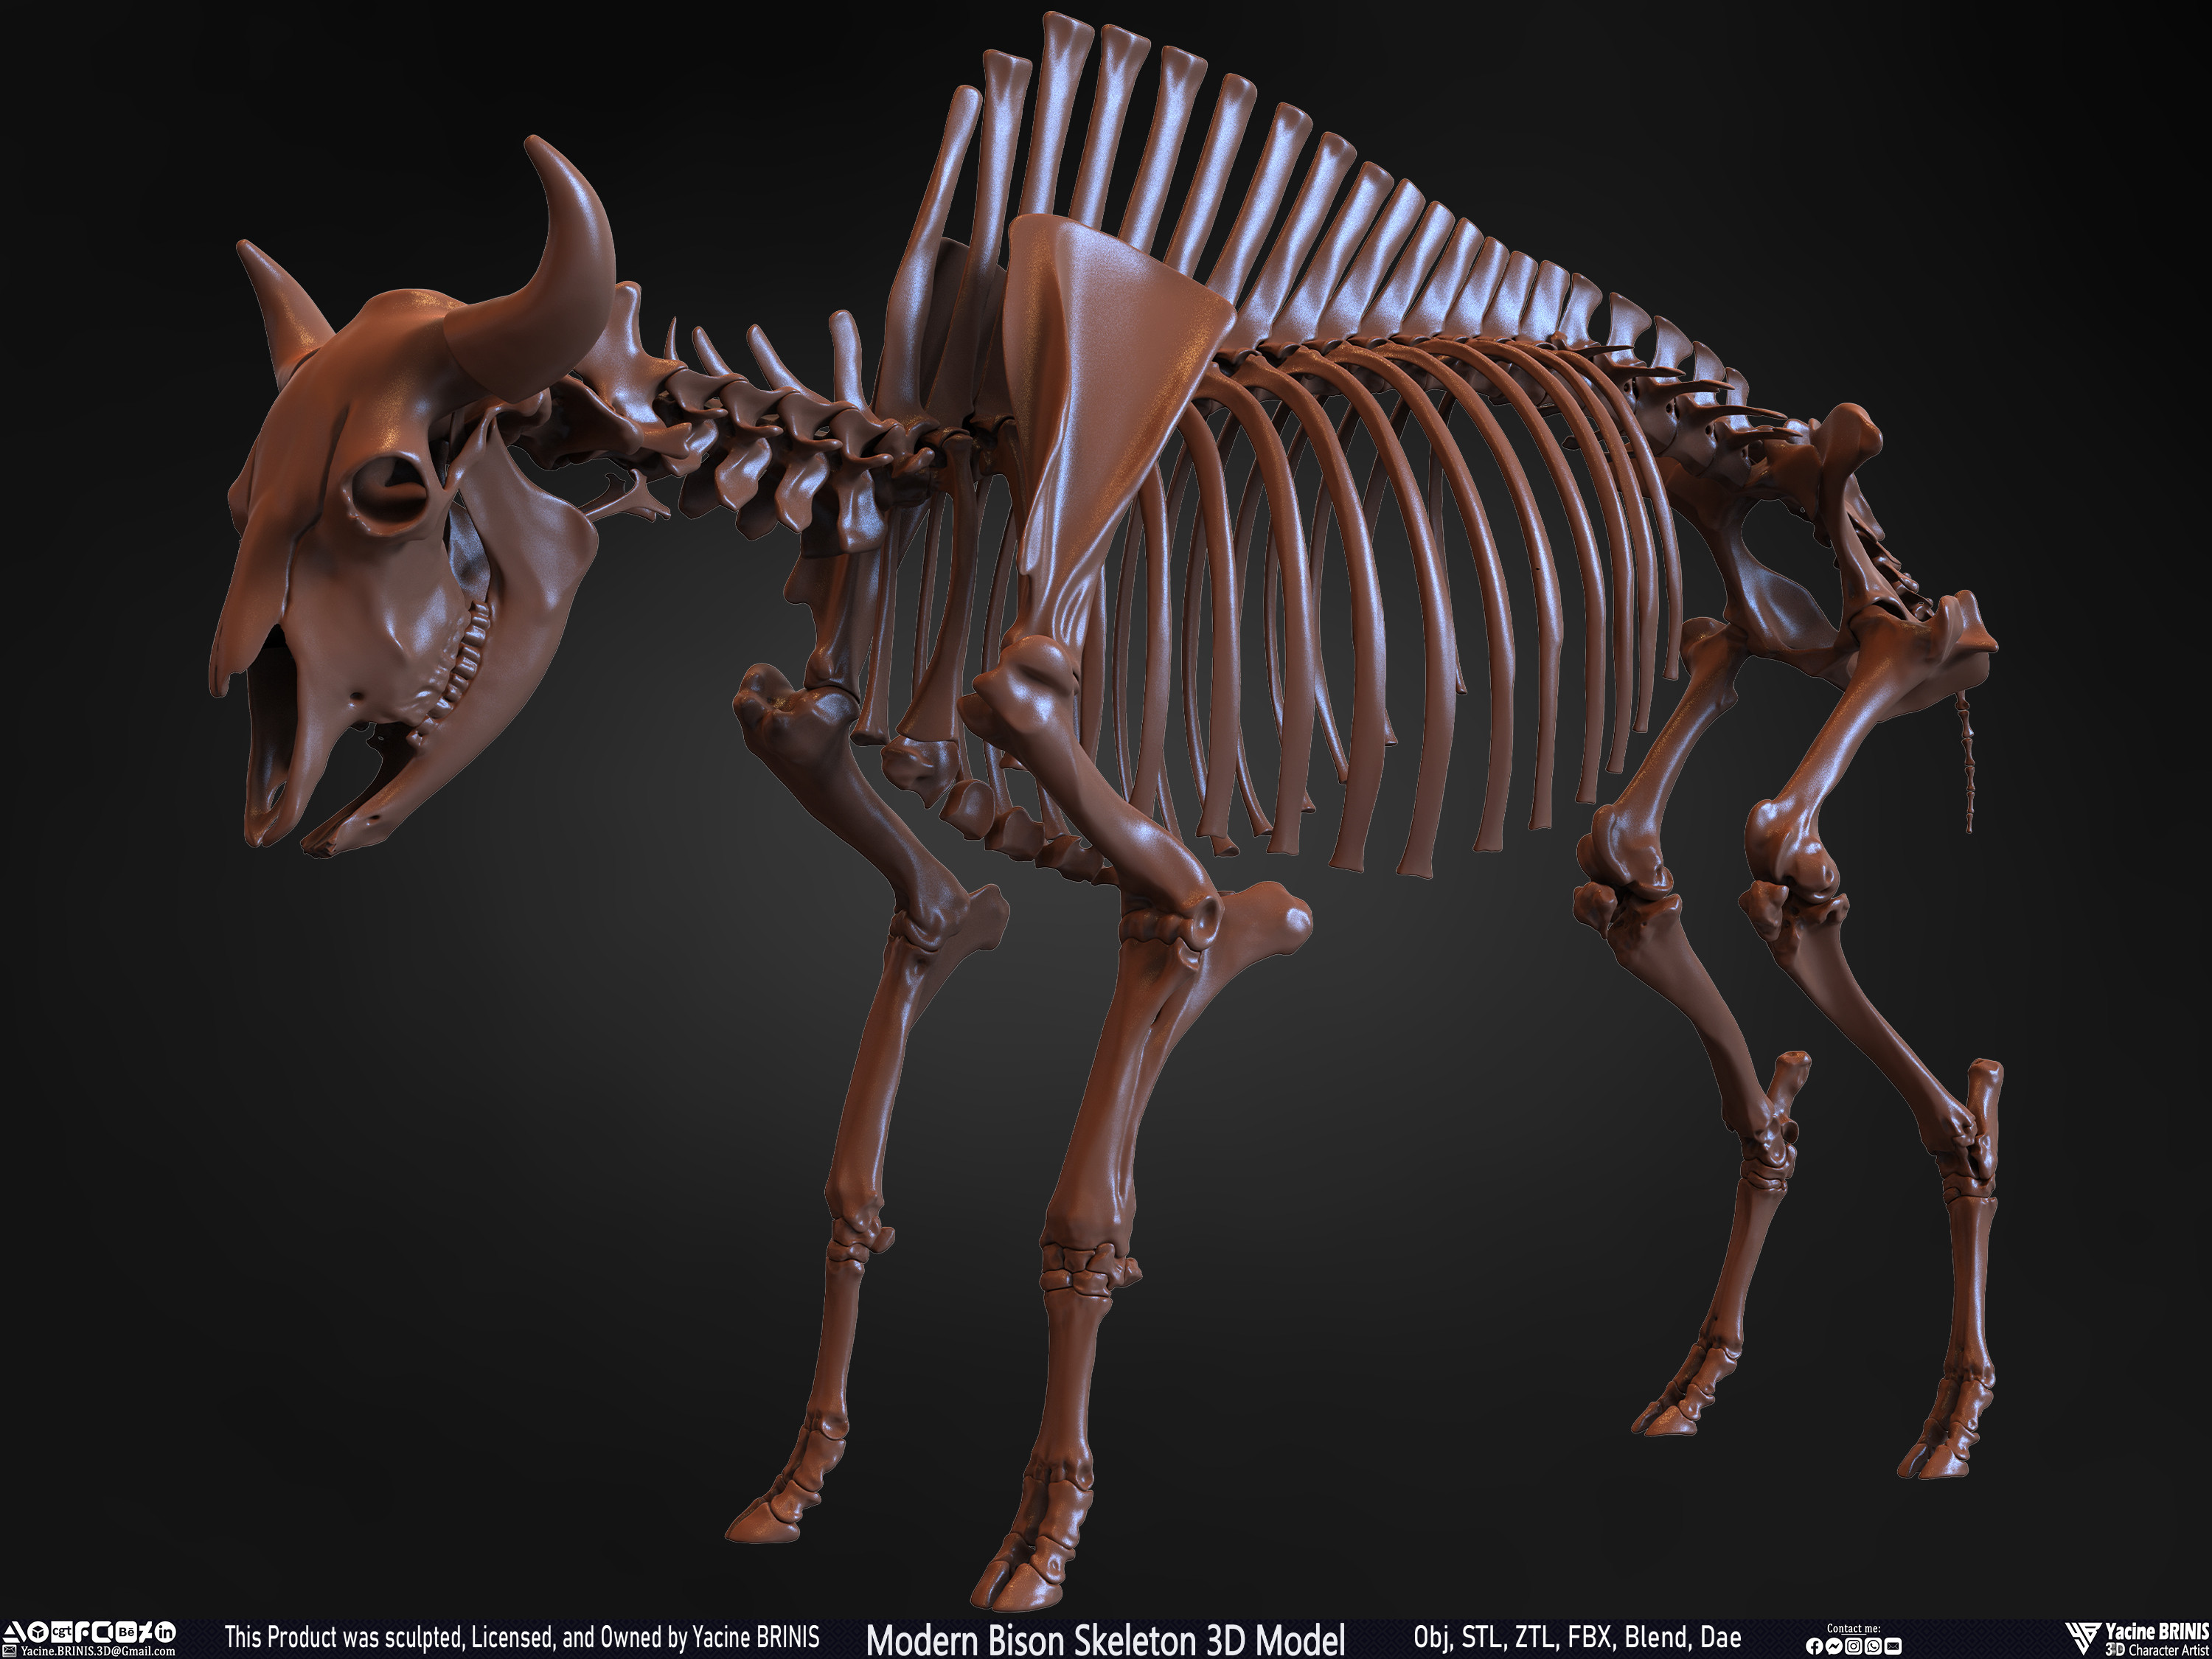 Modern Bison Skeleton 3D Model Sculpted by Yacine BRINIS Set 015